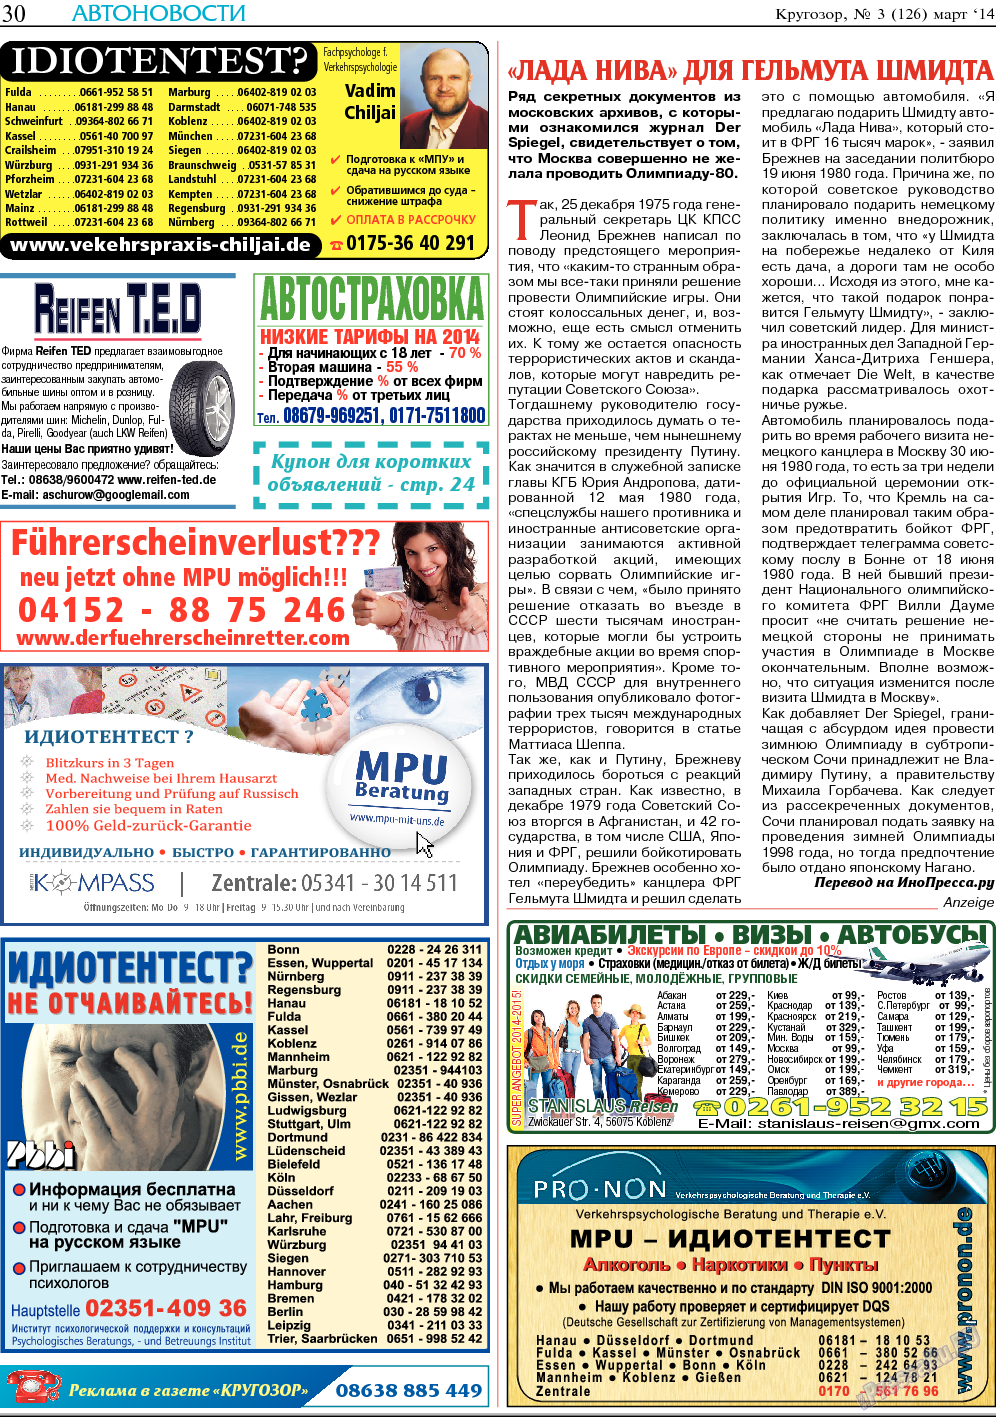 Кругозор (газета). 2014 год, номер 3, стр. 30